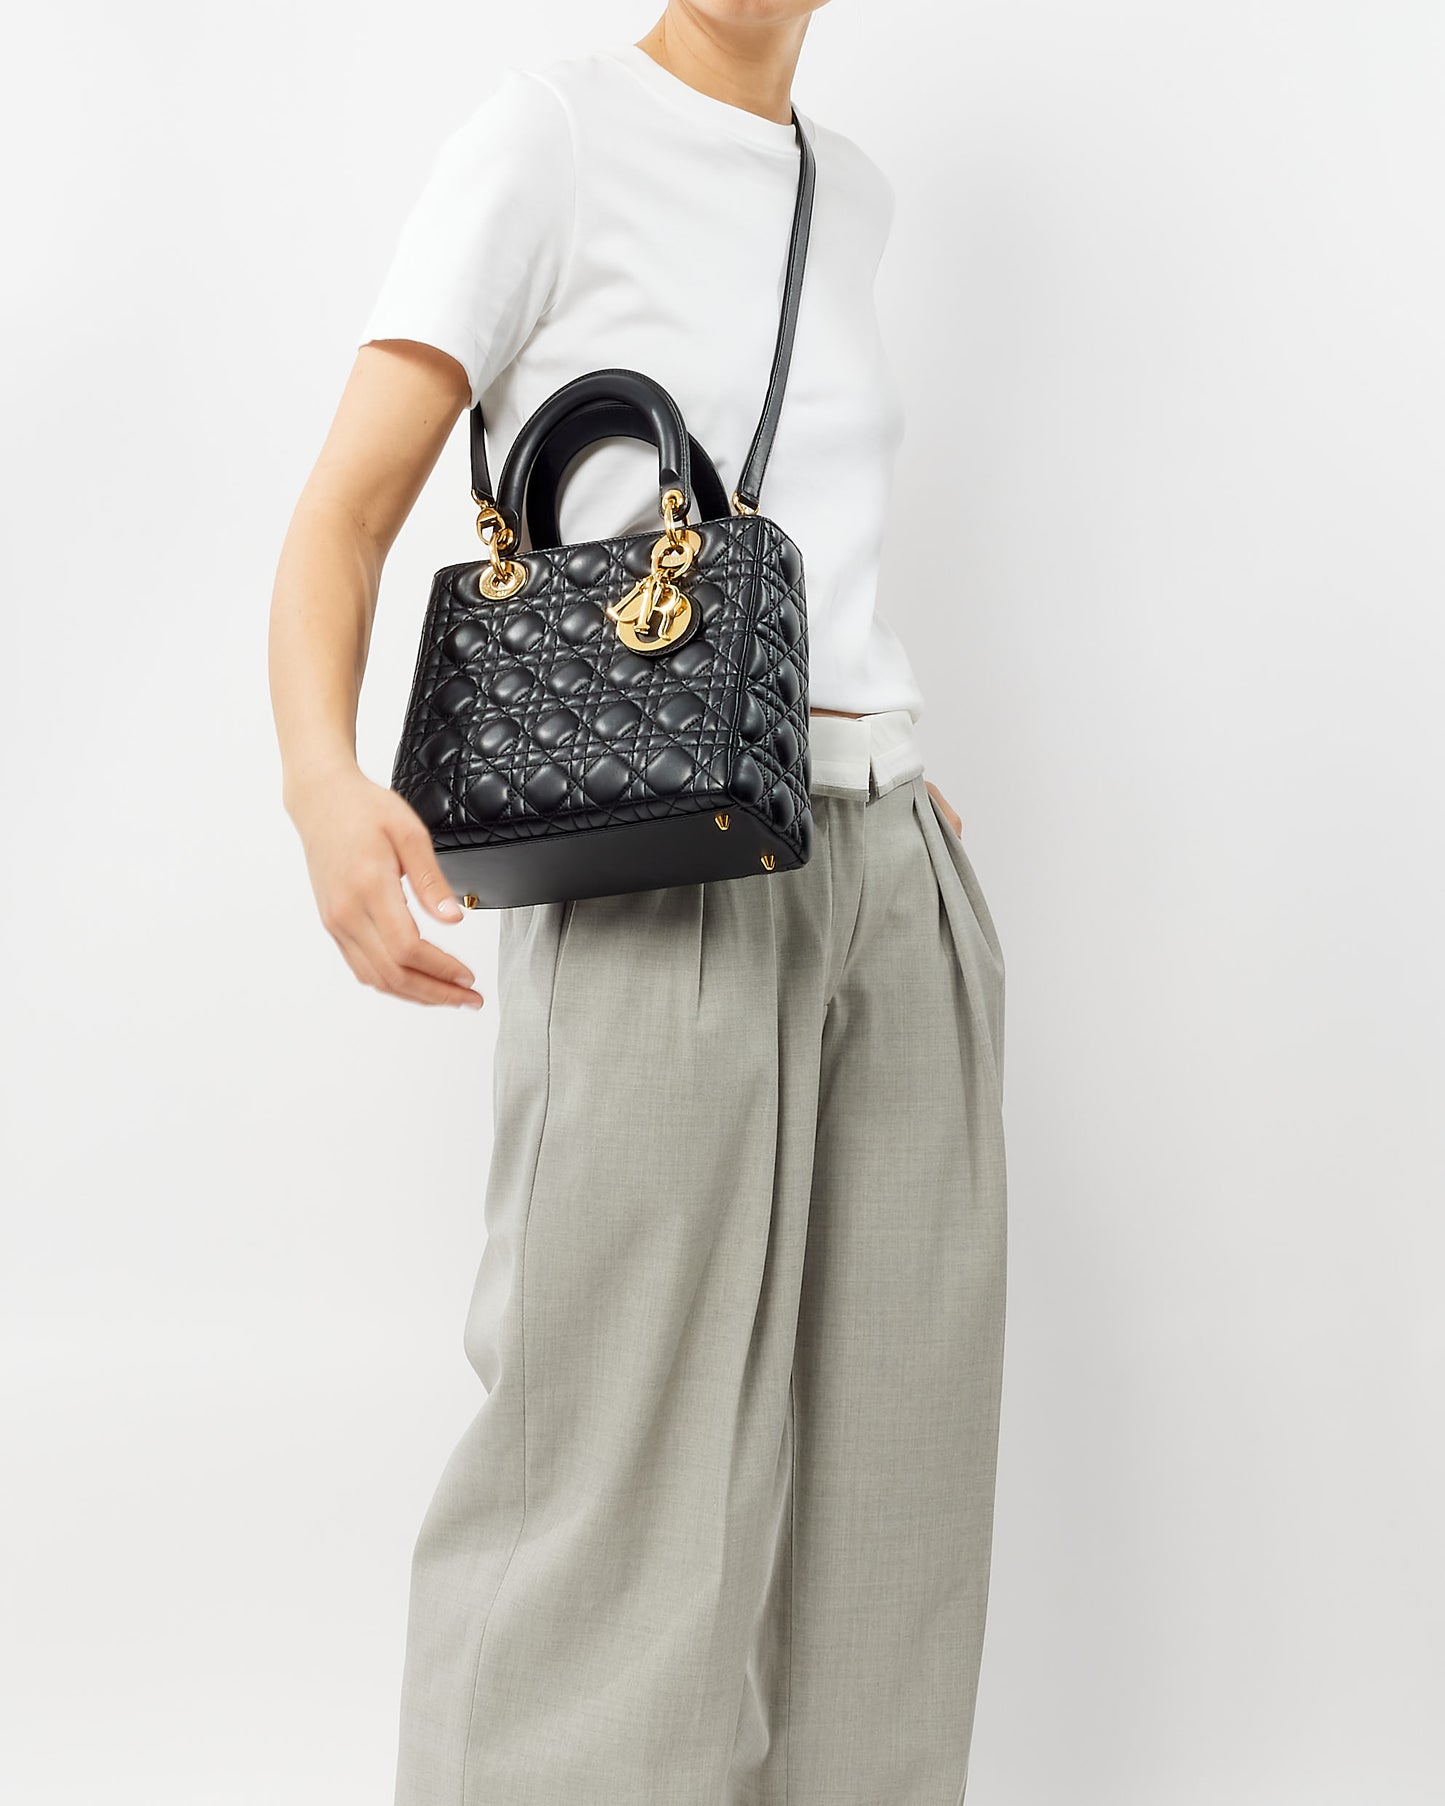 Dior Black Lambskin Leather GHW Medium Lady Dior Bag